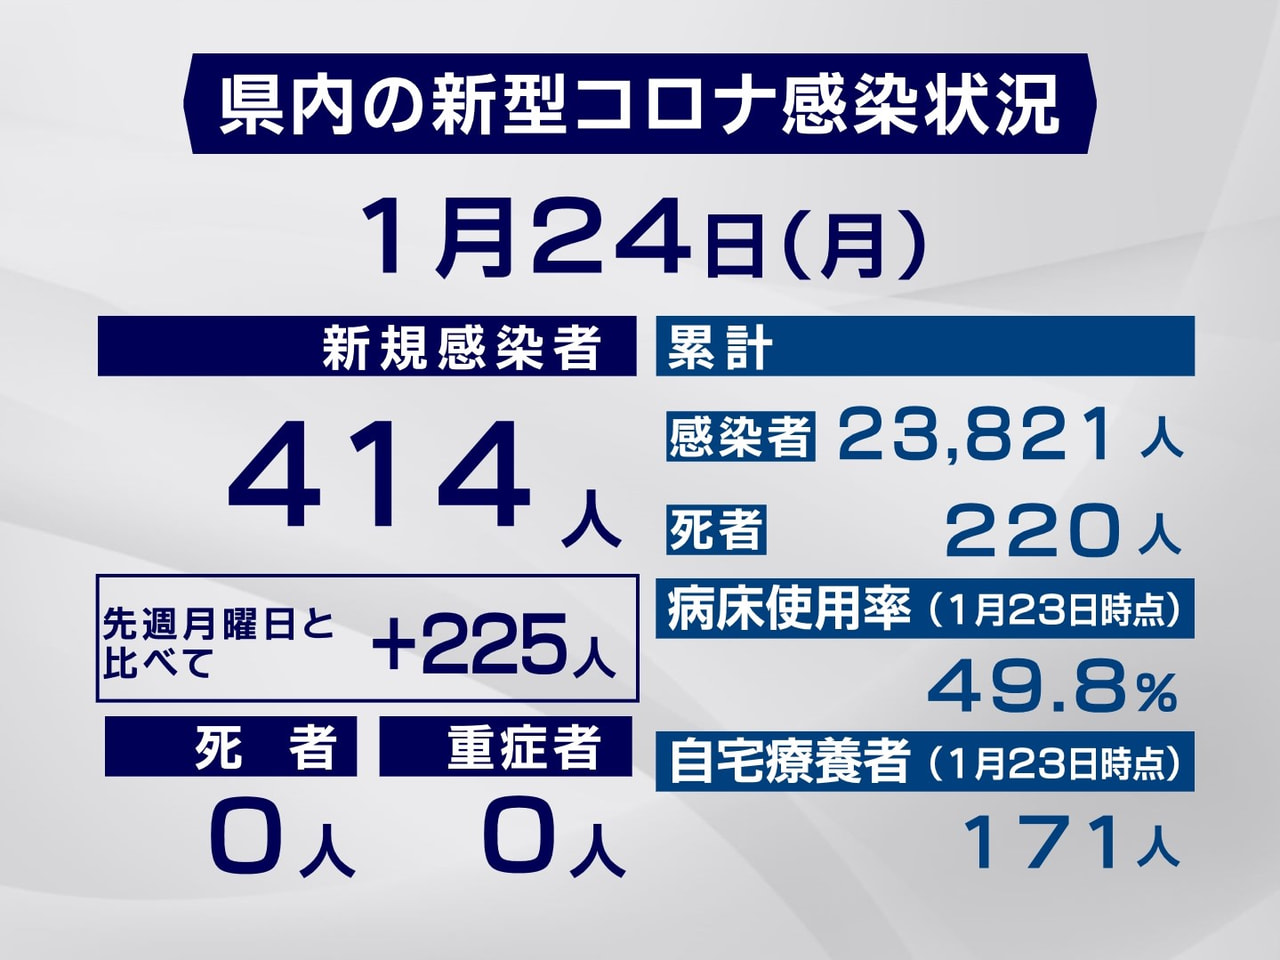 岐阜県は２４日、新たに４１４人の新型コロナウイルス感染を確認したと発表しました。...